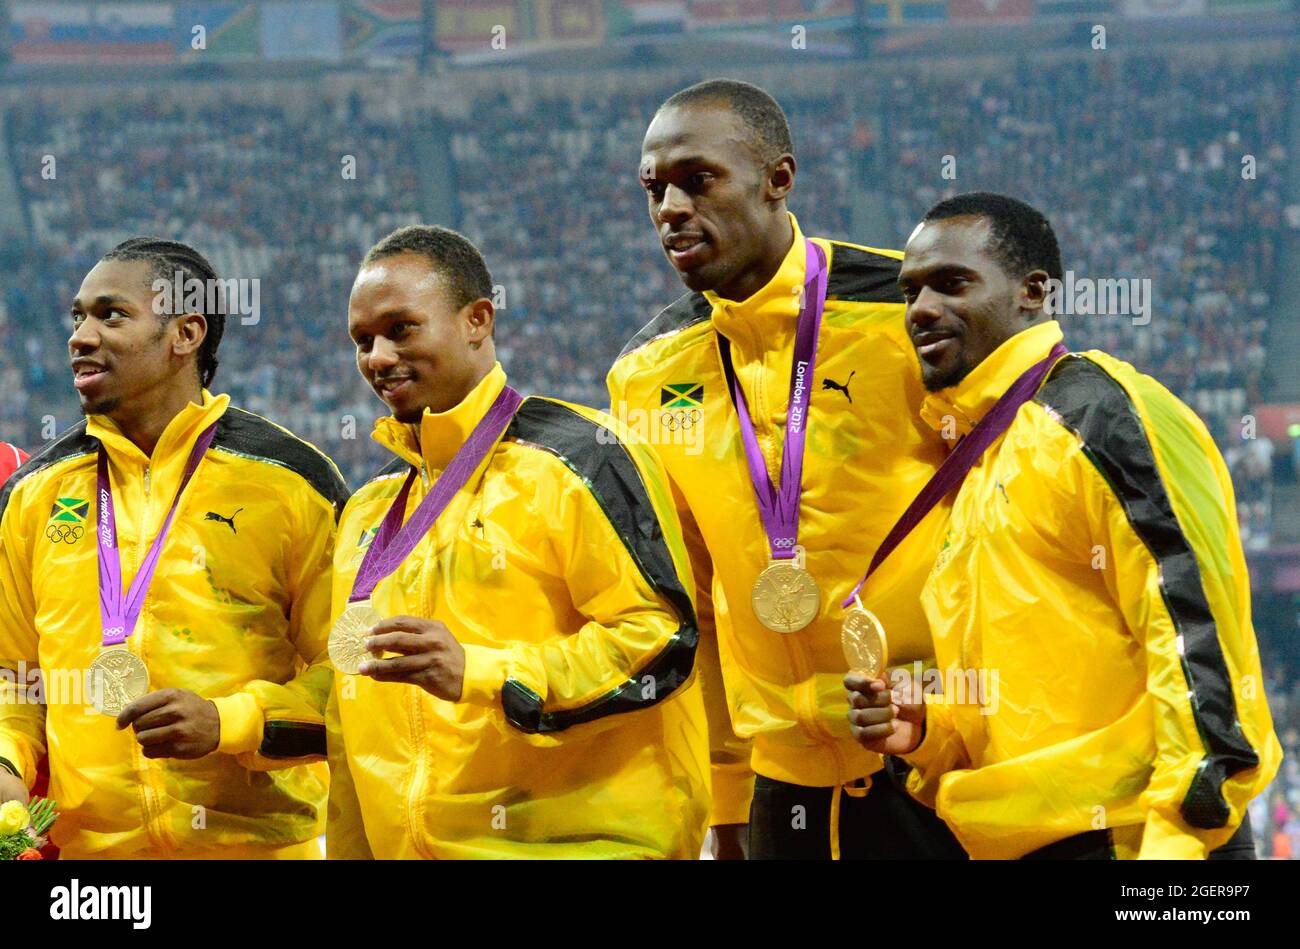 La Jamaïque remporte l'or dans la finale masculine 4 x 100m lors de la dernière nuit d'athlétisme au stade olympique de Londres, le 11 août 2012 Banque D'Images